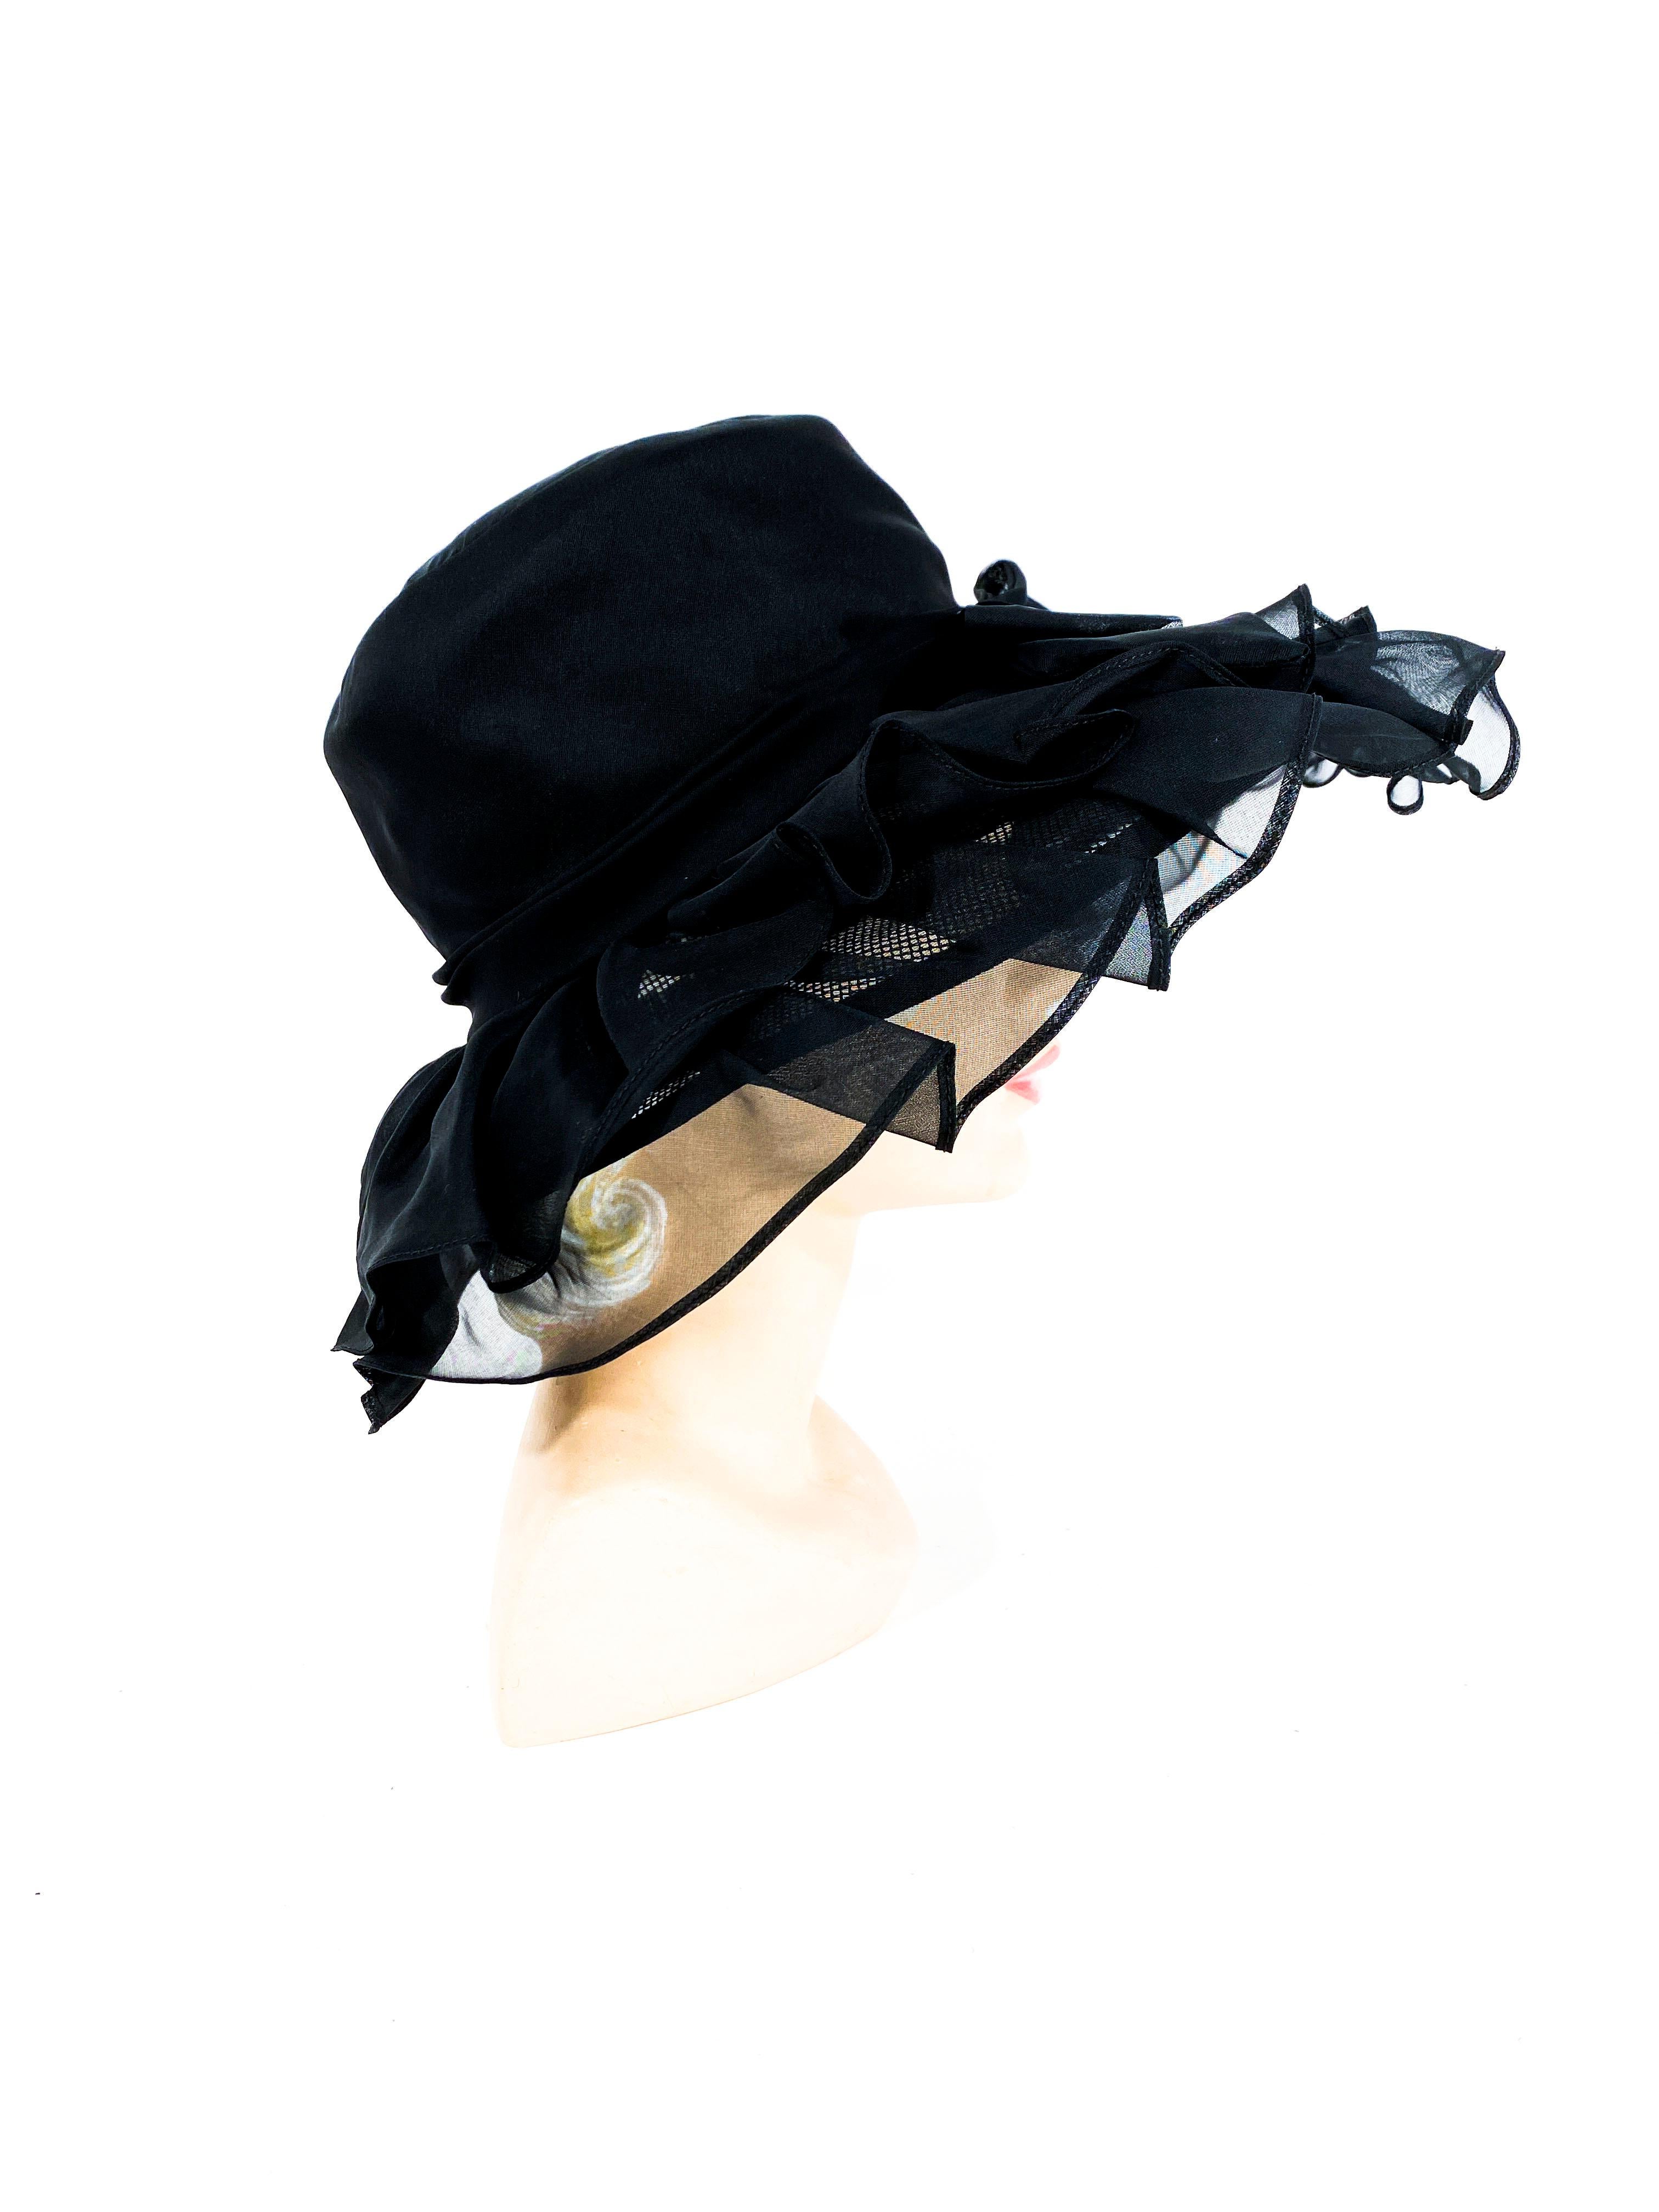 Women's 1960s/1970s Black Ruffled Wide Brimmed Hat